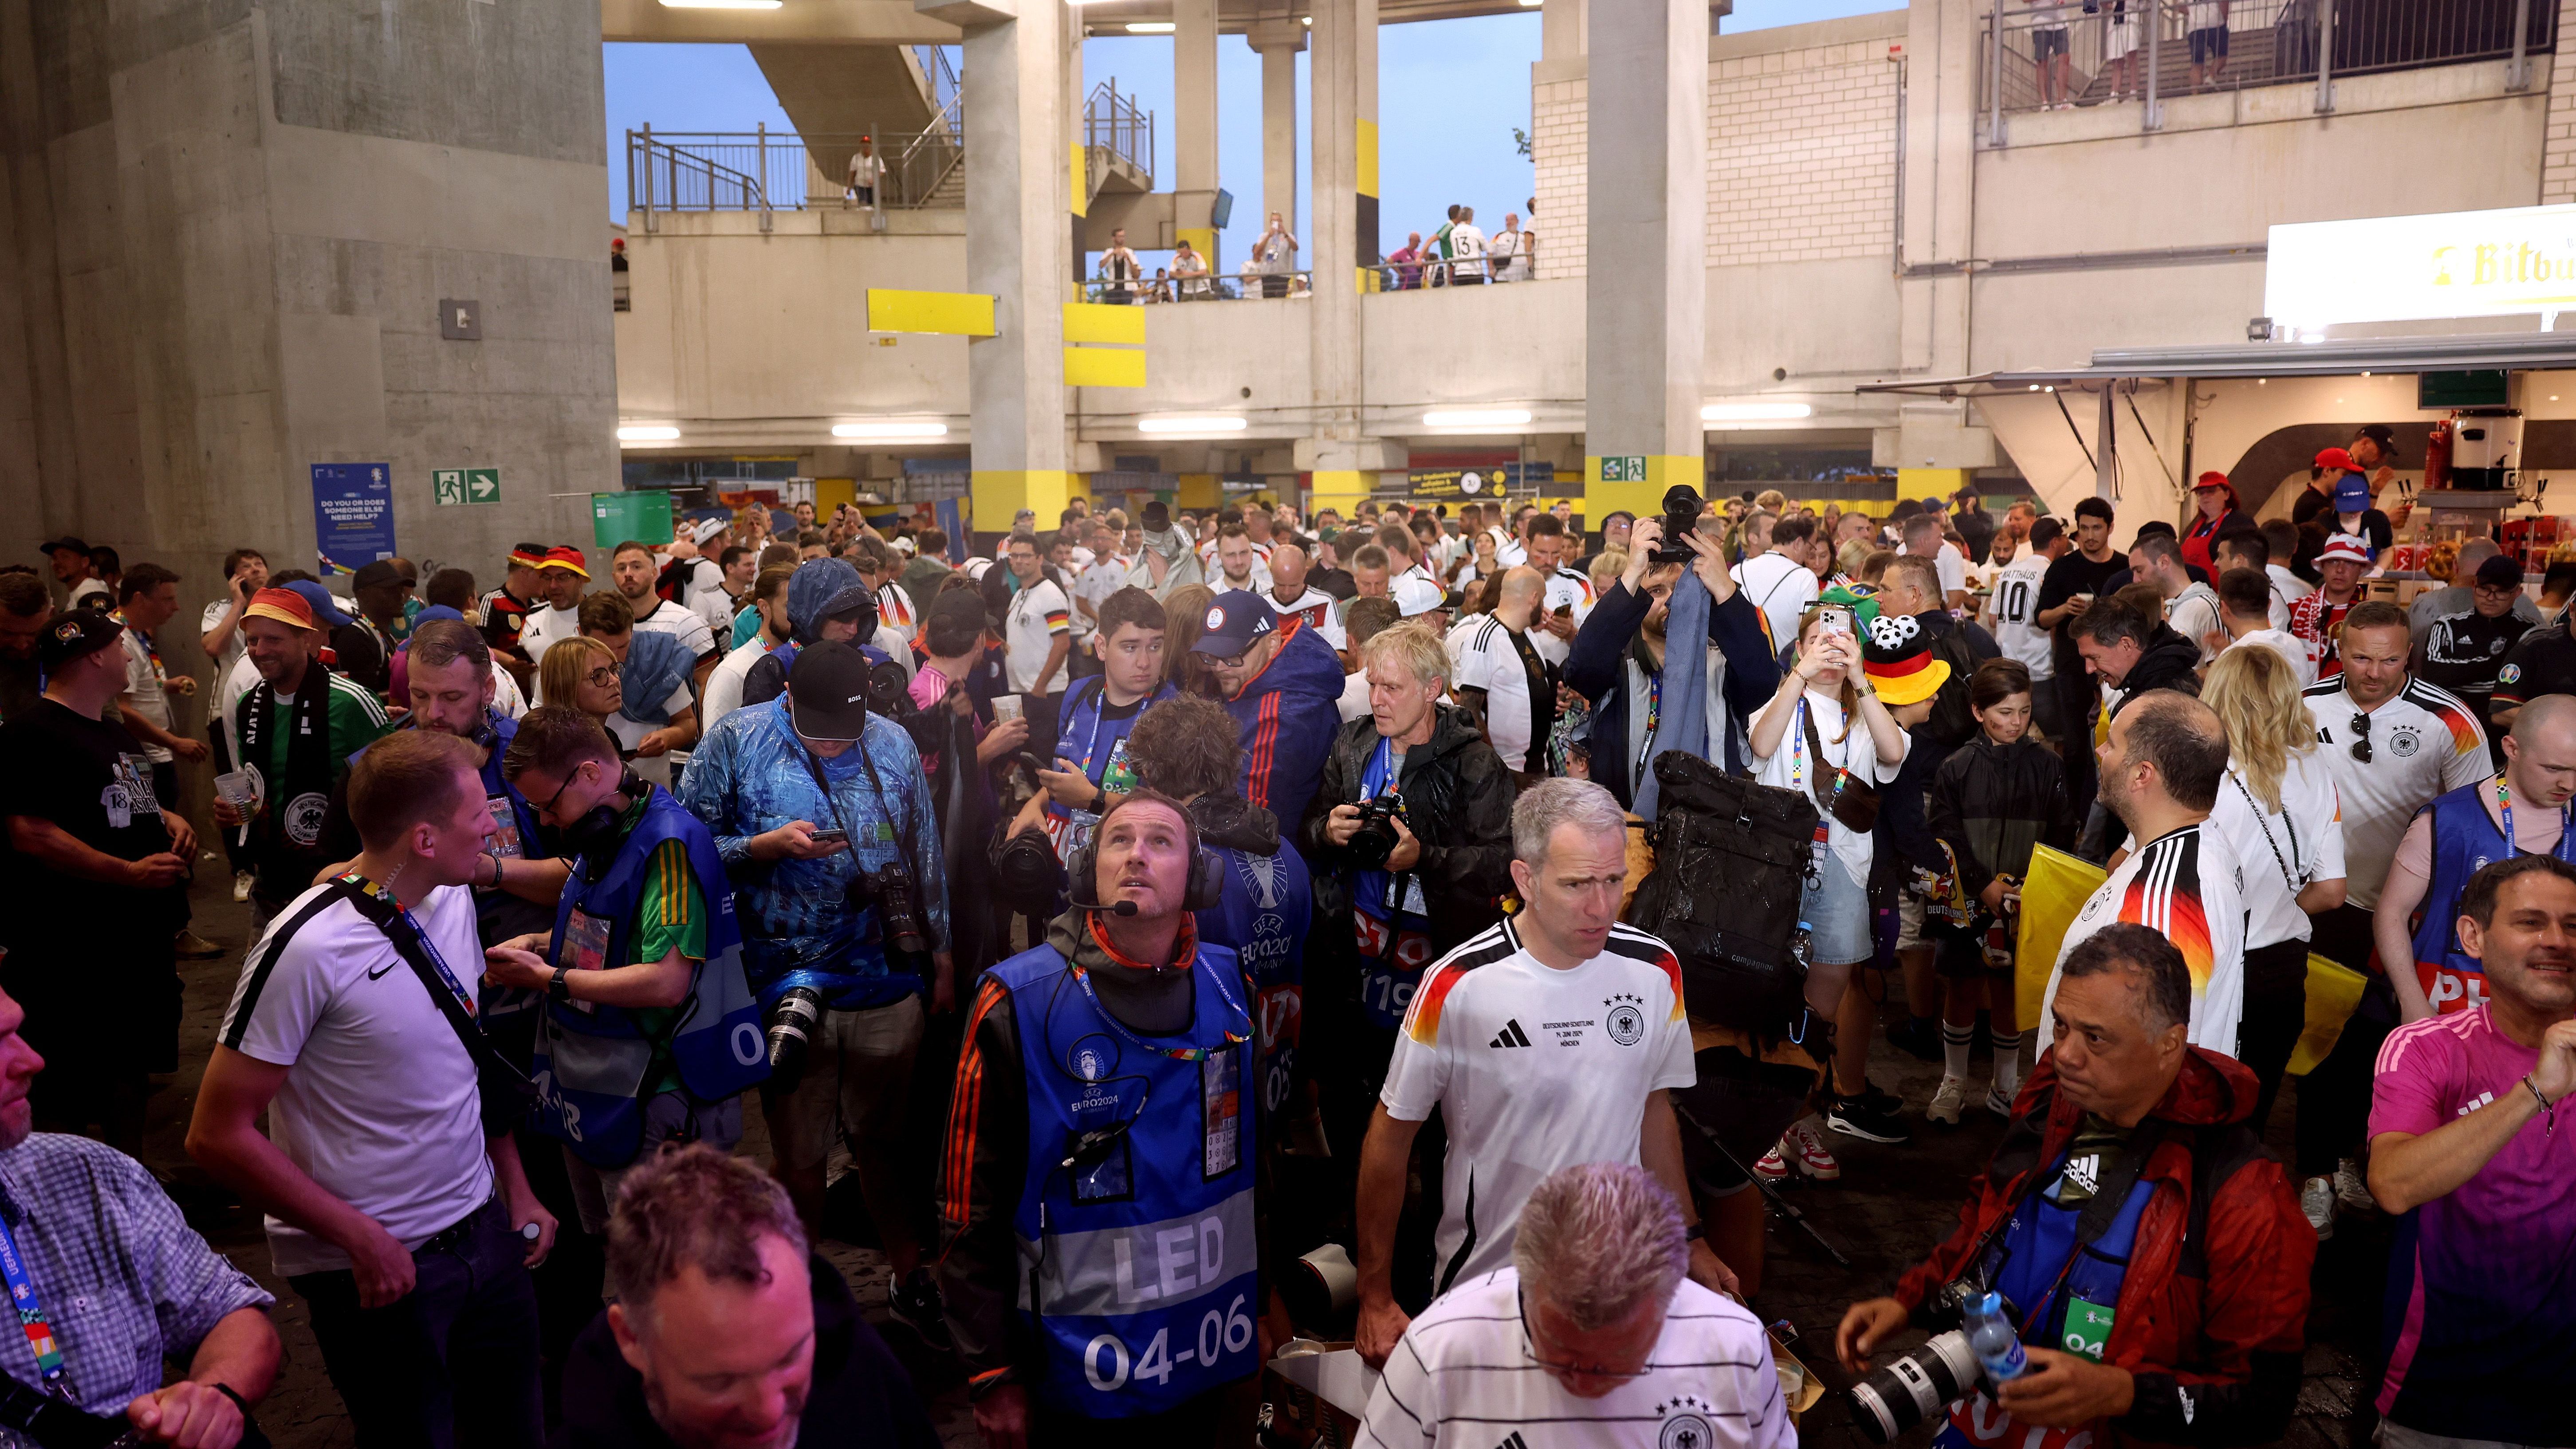 <strong>Fans suchen Schutz vor dem Regen</strong><br>Die Zuschauer, die so gar keine Lust darauf hatten, nass zu werden, versuchten in den überdachten Bereichen des Stadions Schutz vor dem Gewitter zu finden - wie etwa hier im Kiosk-Bereich in Dortmund.&nbsp;